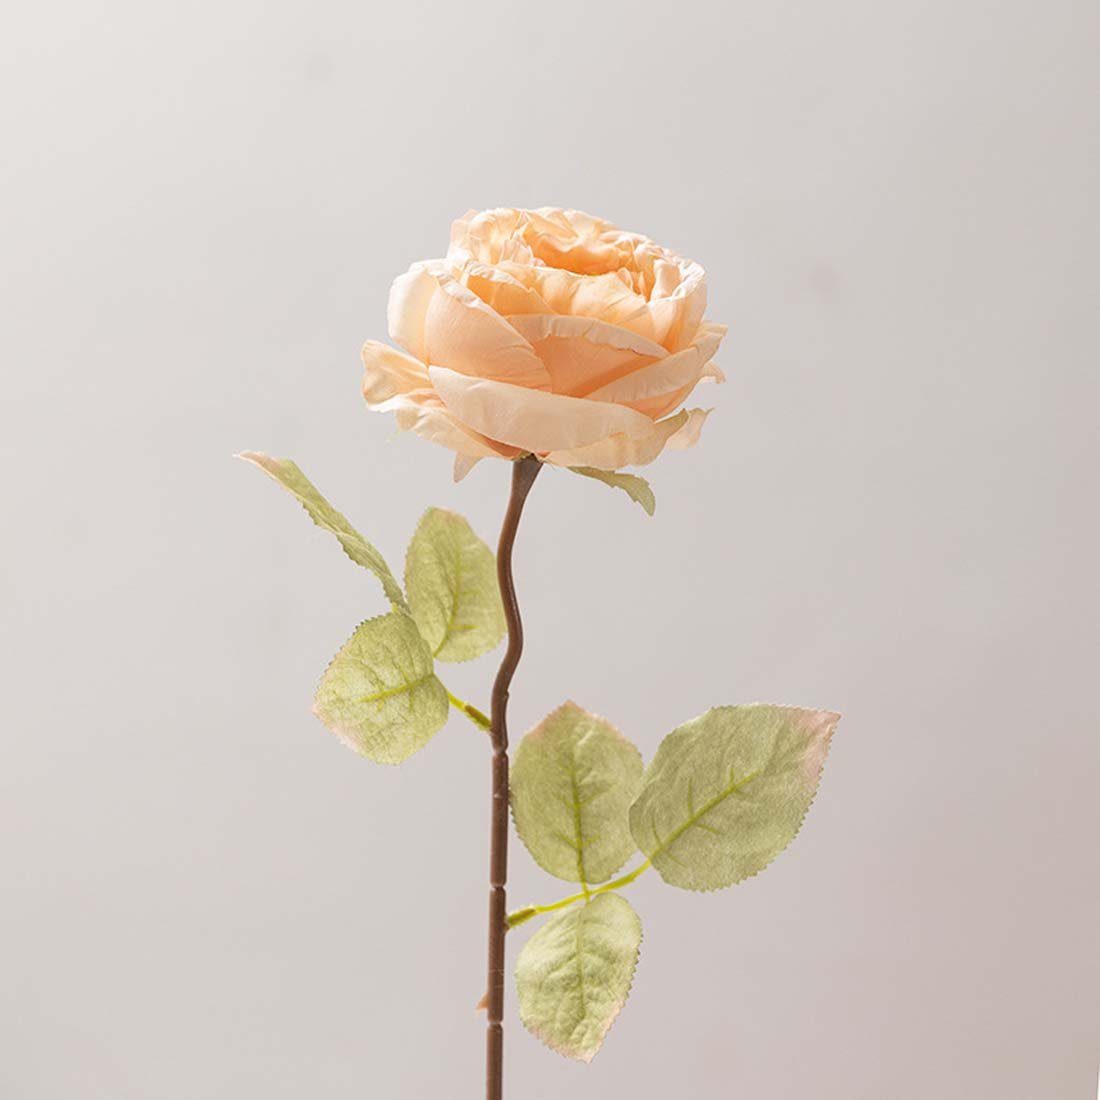 Kunstpflanze Rayon-Rosenstrauß, Kunstblumen, FIDDY, künstliche Rosen, Rosen, Röstrandrosen mit gebackenen Hochzeitsstrauß Hochzeitssträuße